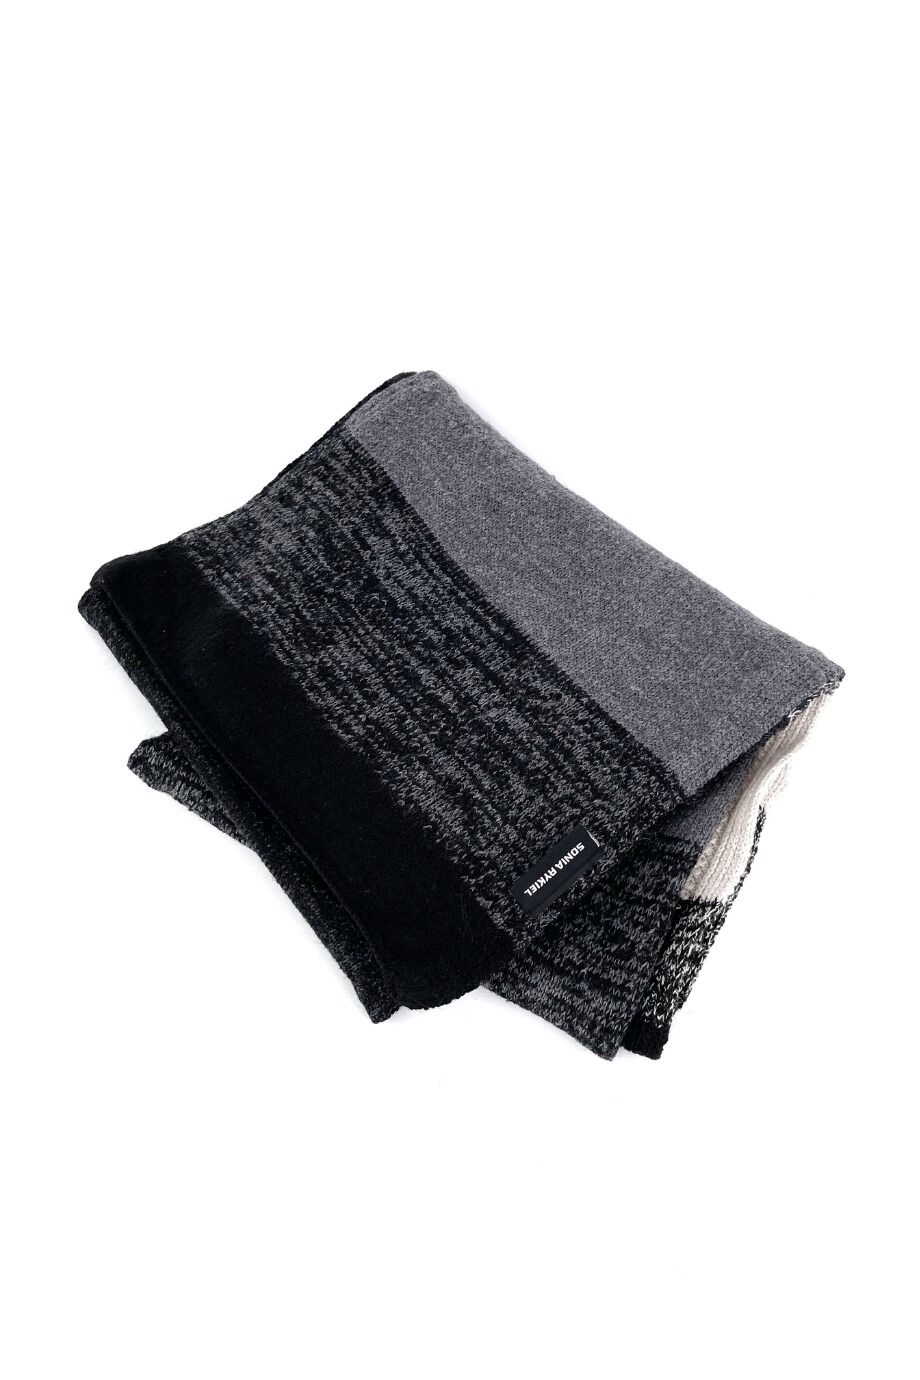 image 1 Вязаный шарф черно-серой расцветки